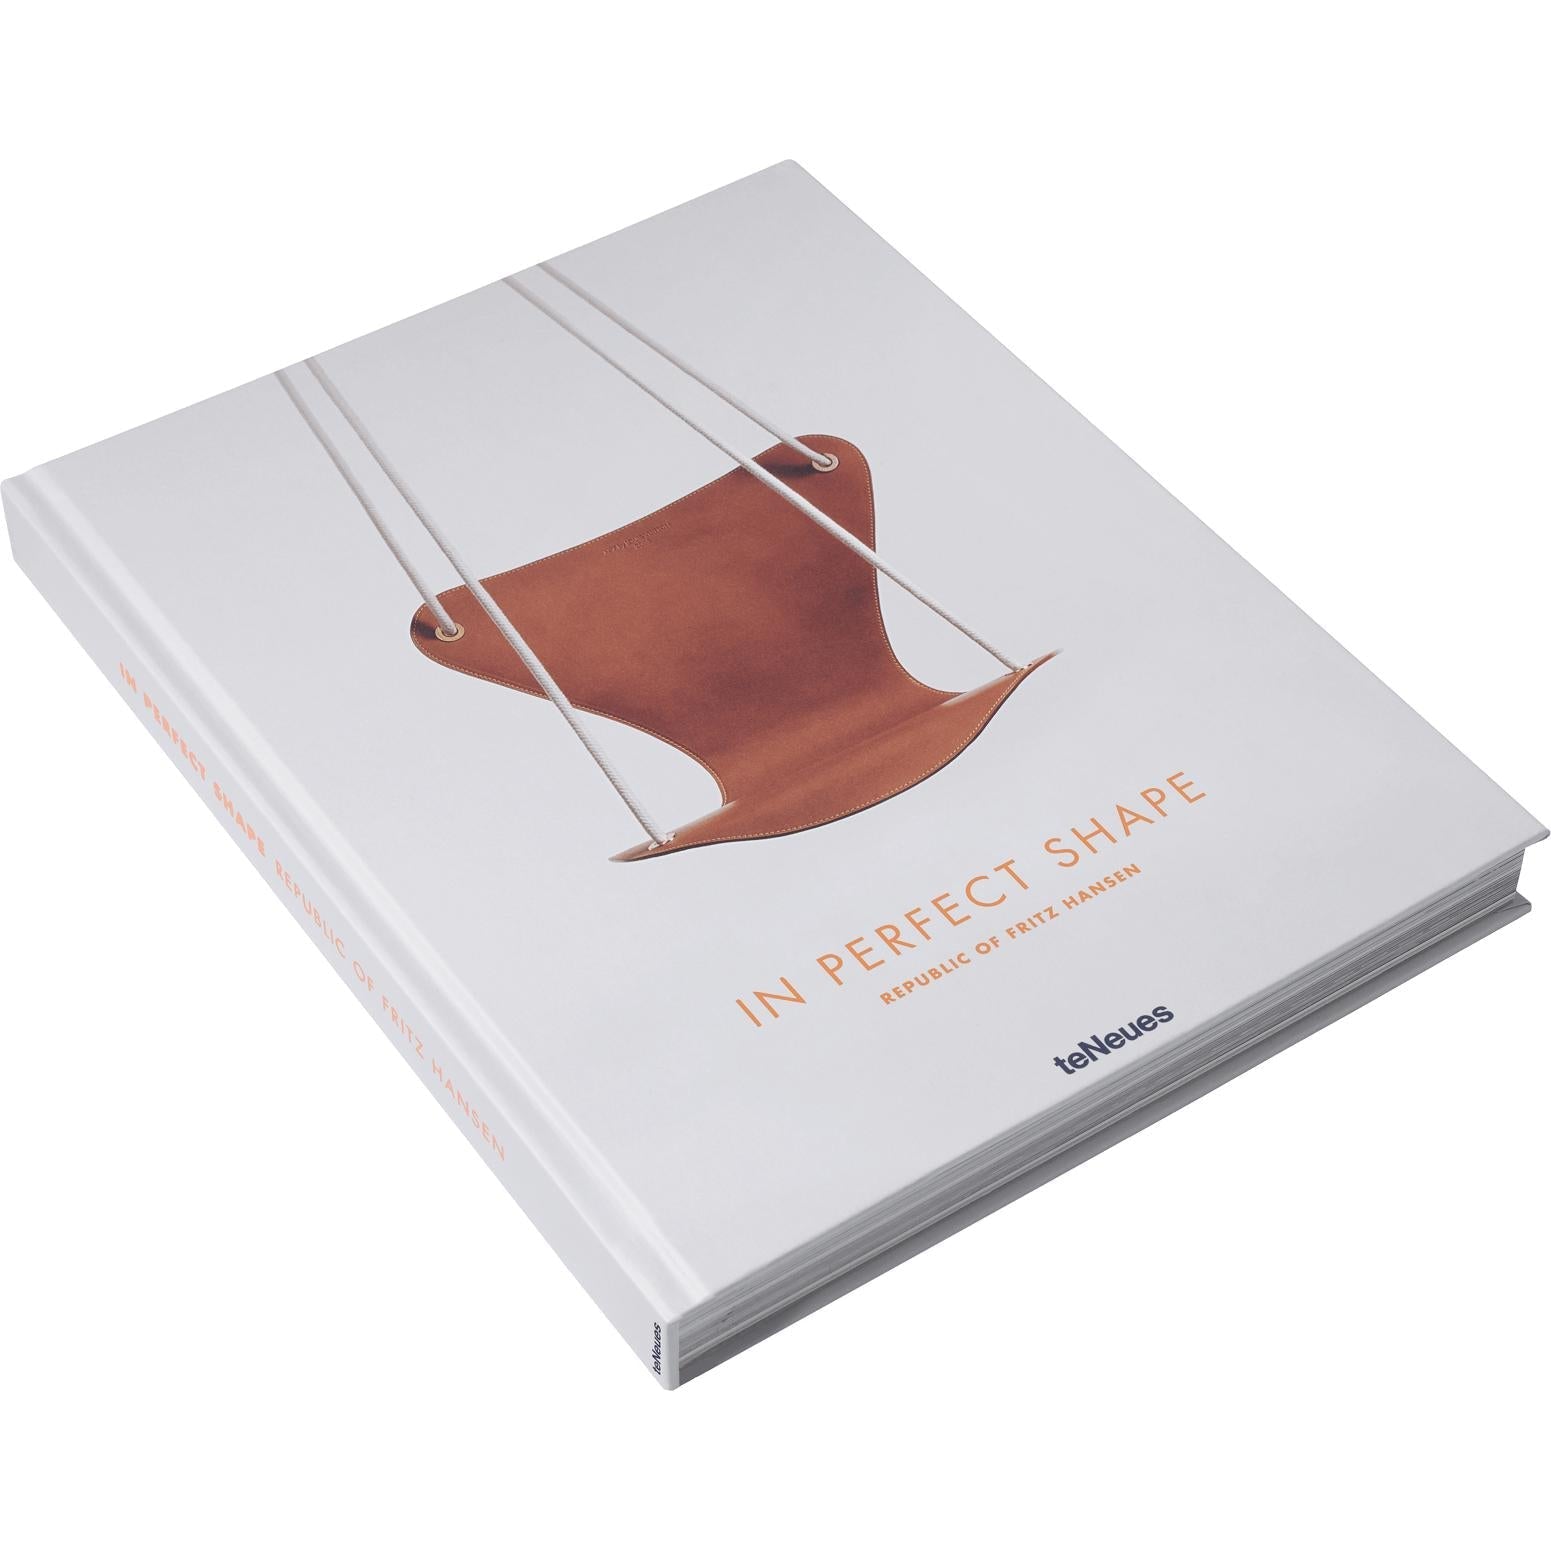 Fritz Hansen Koffietafelboek, in perfecte vorm